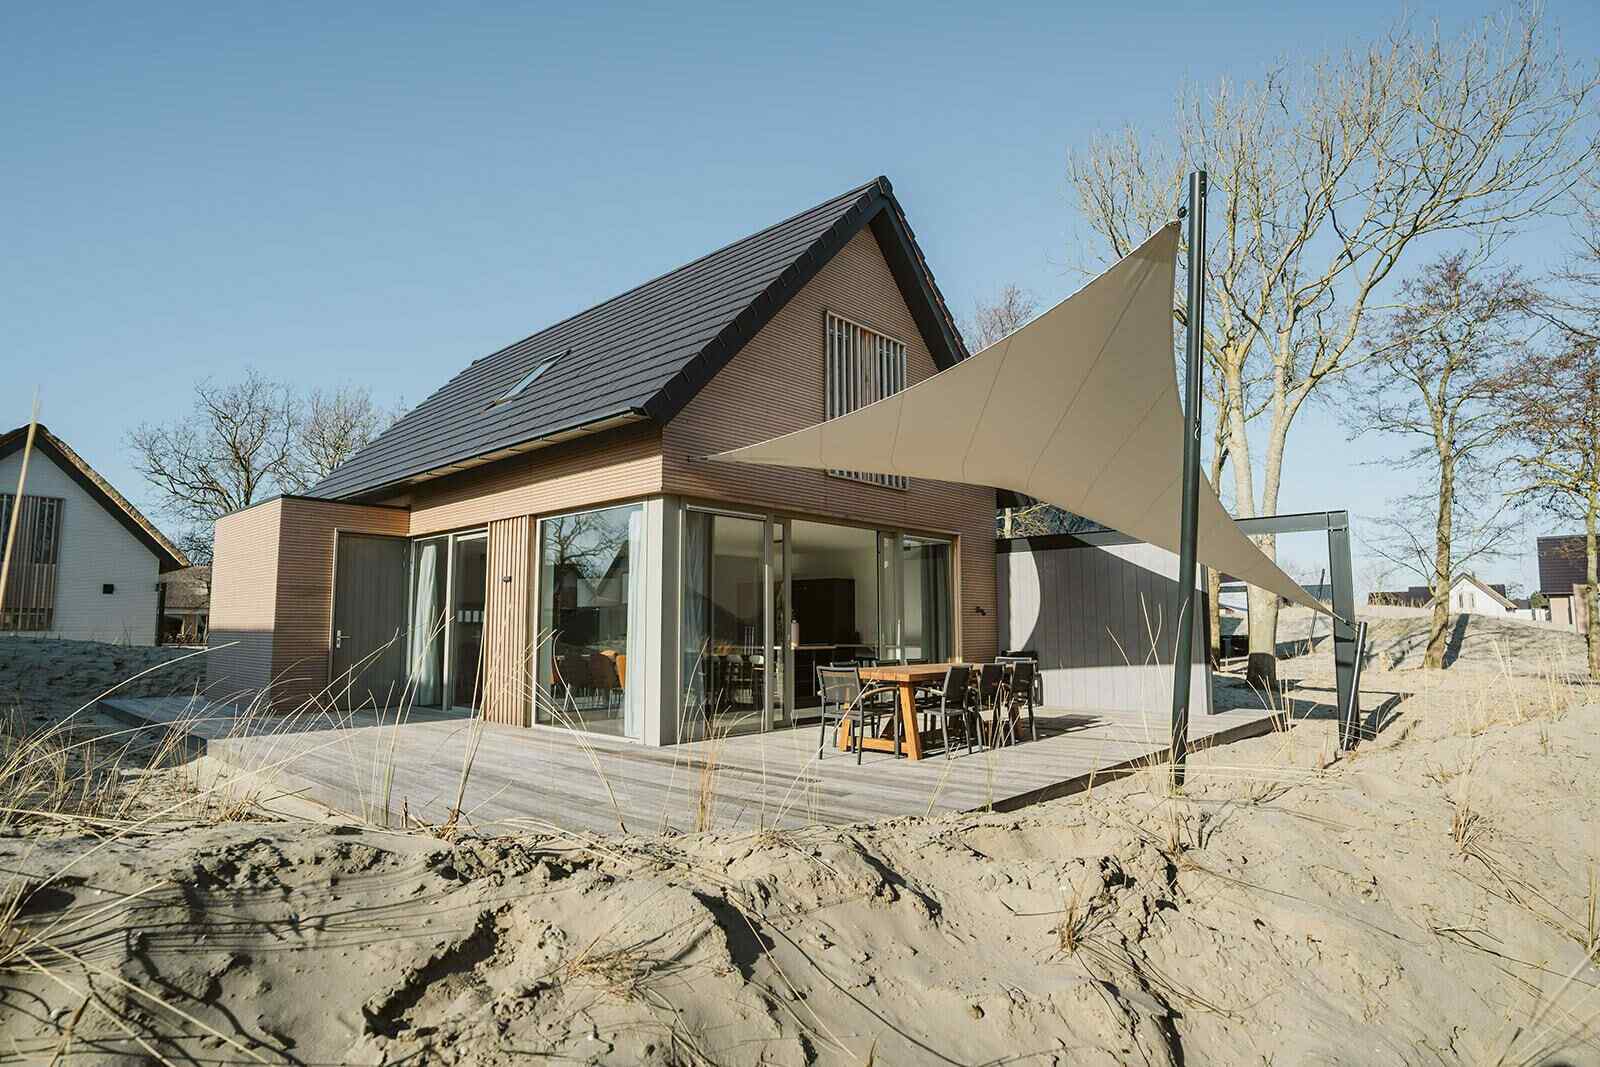 Prachtig 6 persoons vakantiehuis in Ouddorp nabij het strand.